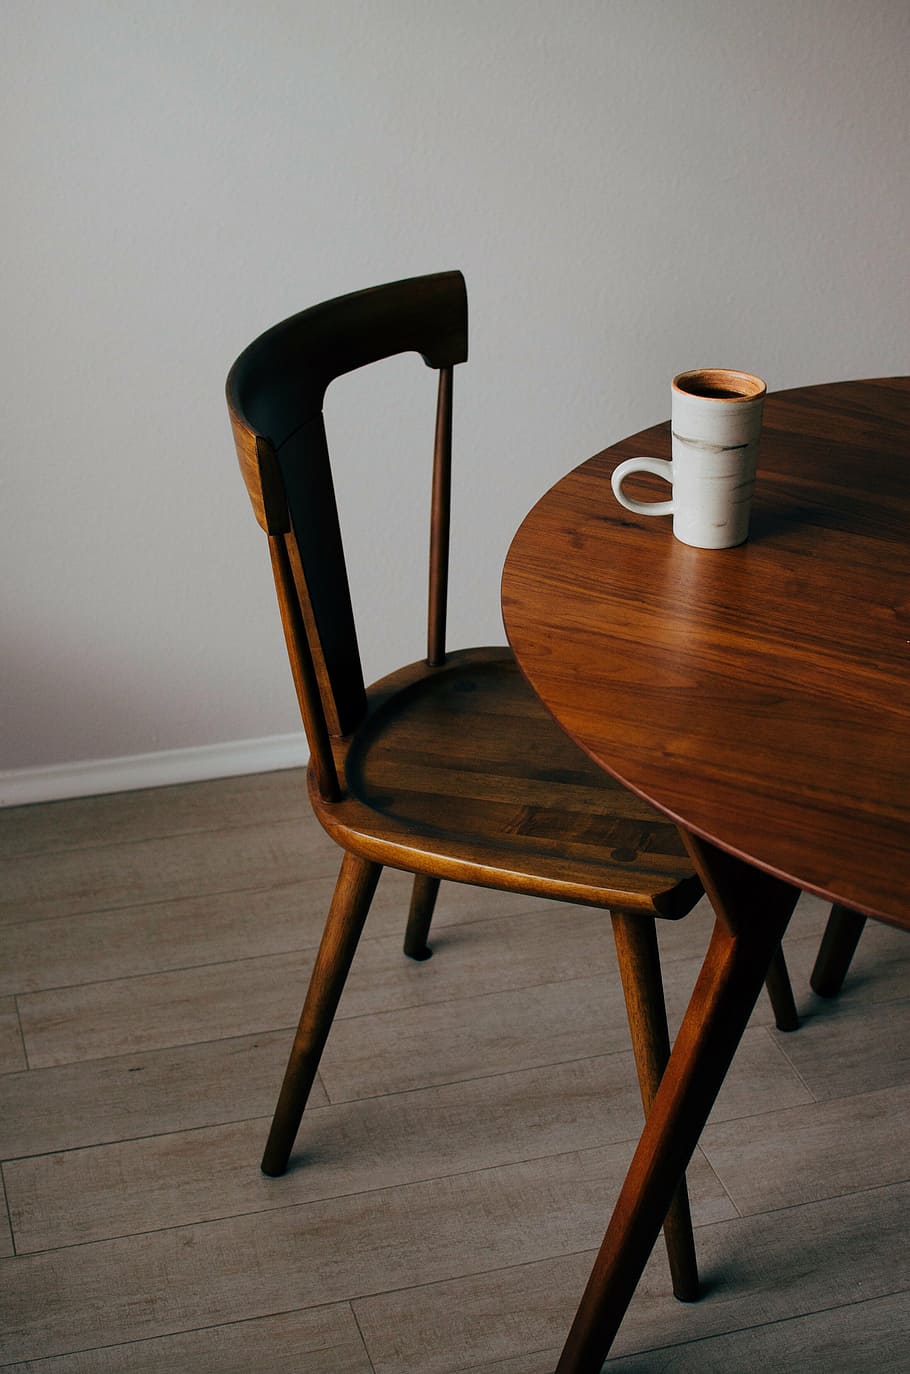 marrom, de madeira, cadeira, ao lado, branco, cerâmica, caneca de café, mesa, caneca, copa